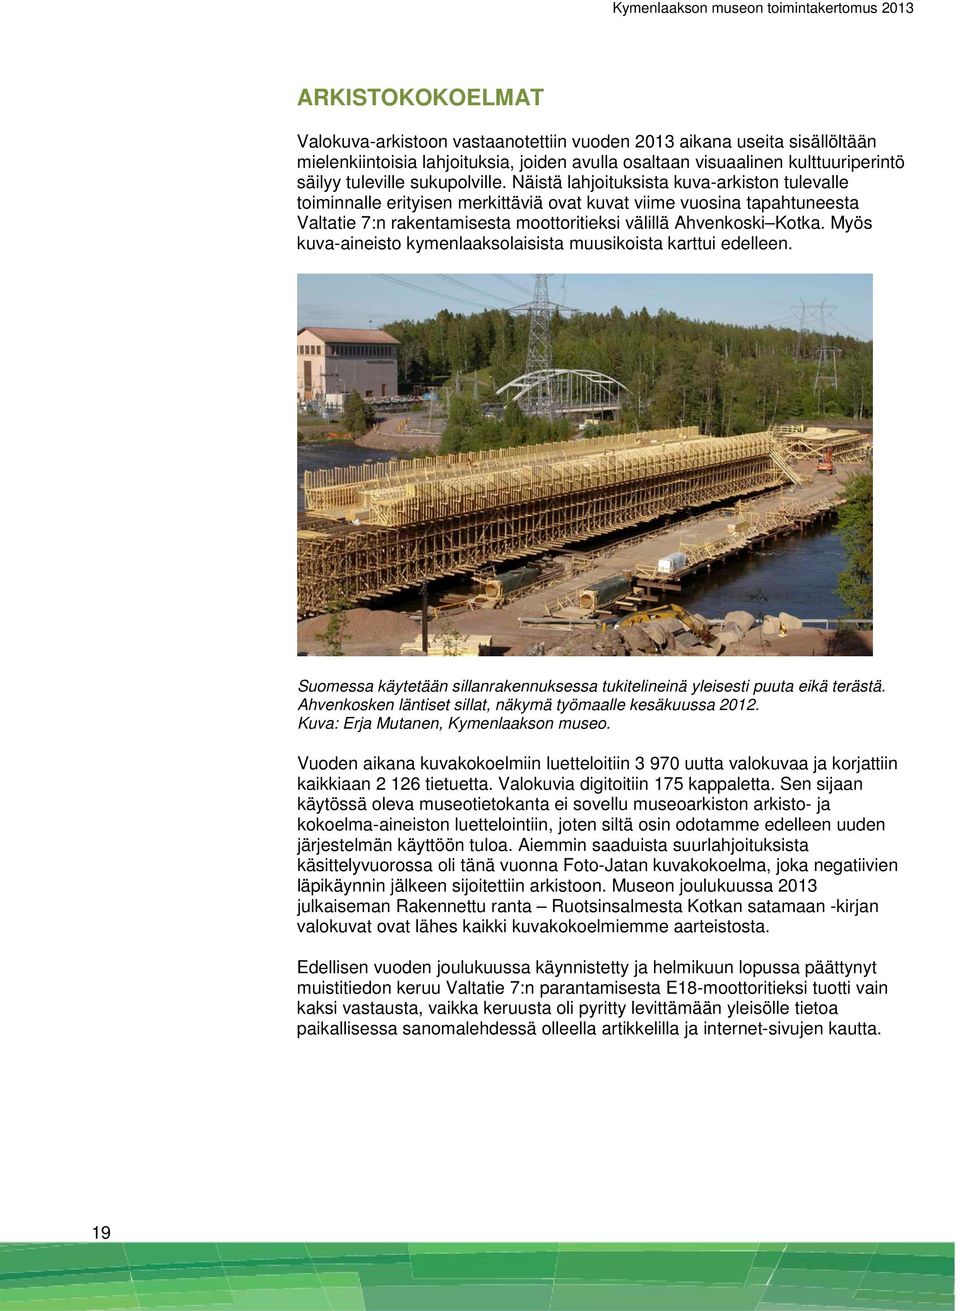 Näistä lahjoituksista kuva-arkiston tulevalle toiminnalle erityisen merkittäviä ovat kuvat viime vuosina tapahtuneesta Valtatie 7:n rakentamisesta moottoritieksi välillä Ahvenkoski Kotka.